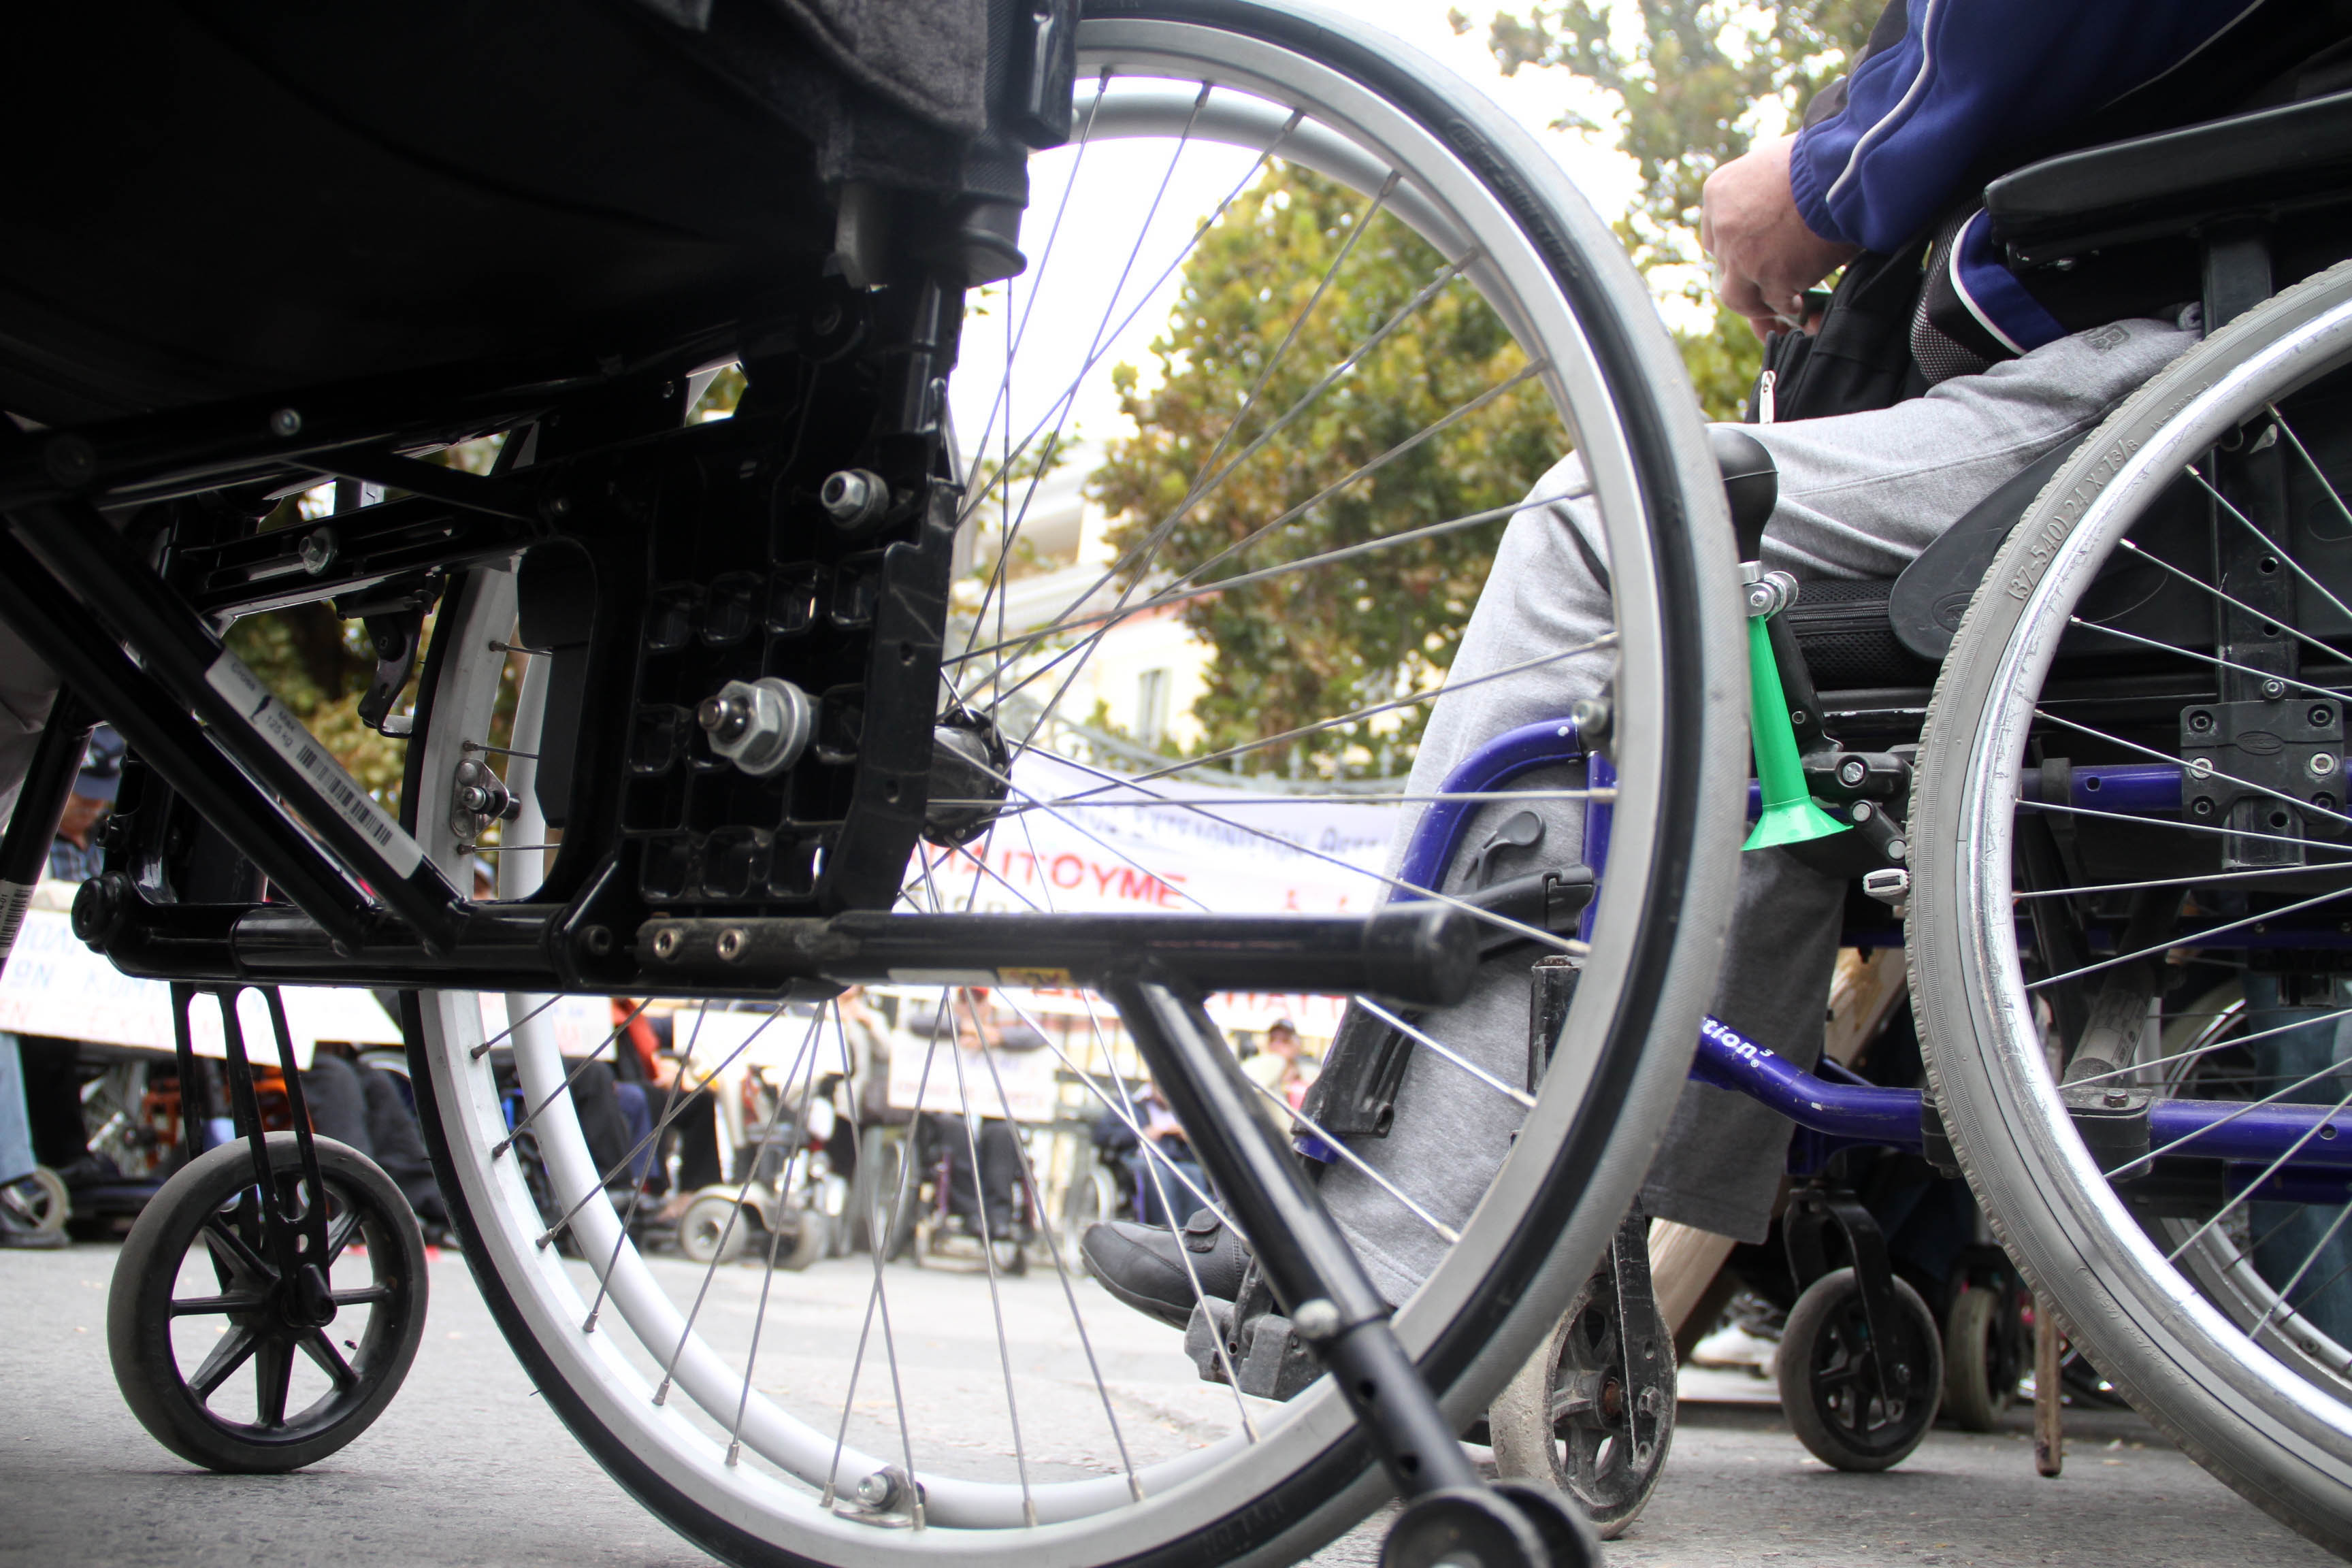 Σταϊκούρας: Αύξηση στις συντάξεις για άτομα με αναπηρία 80%